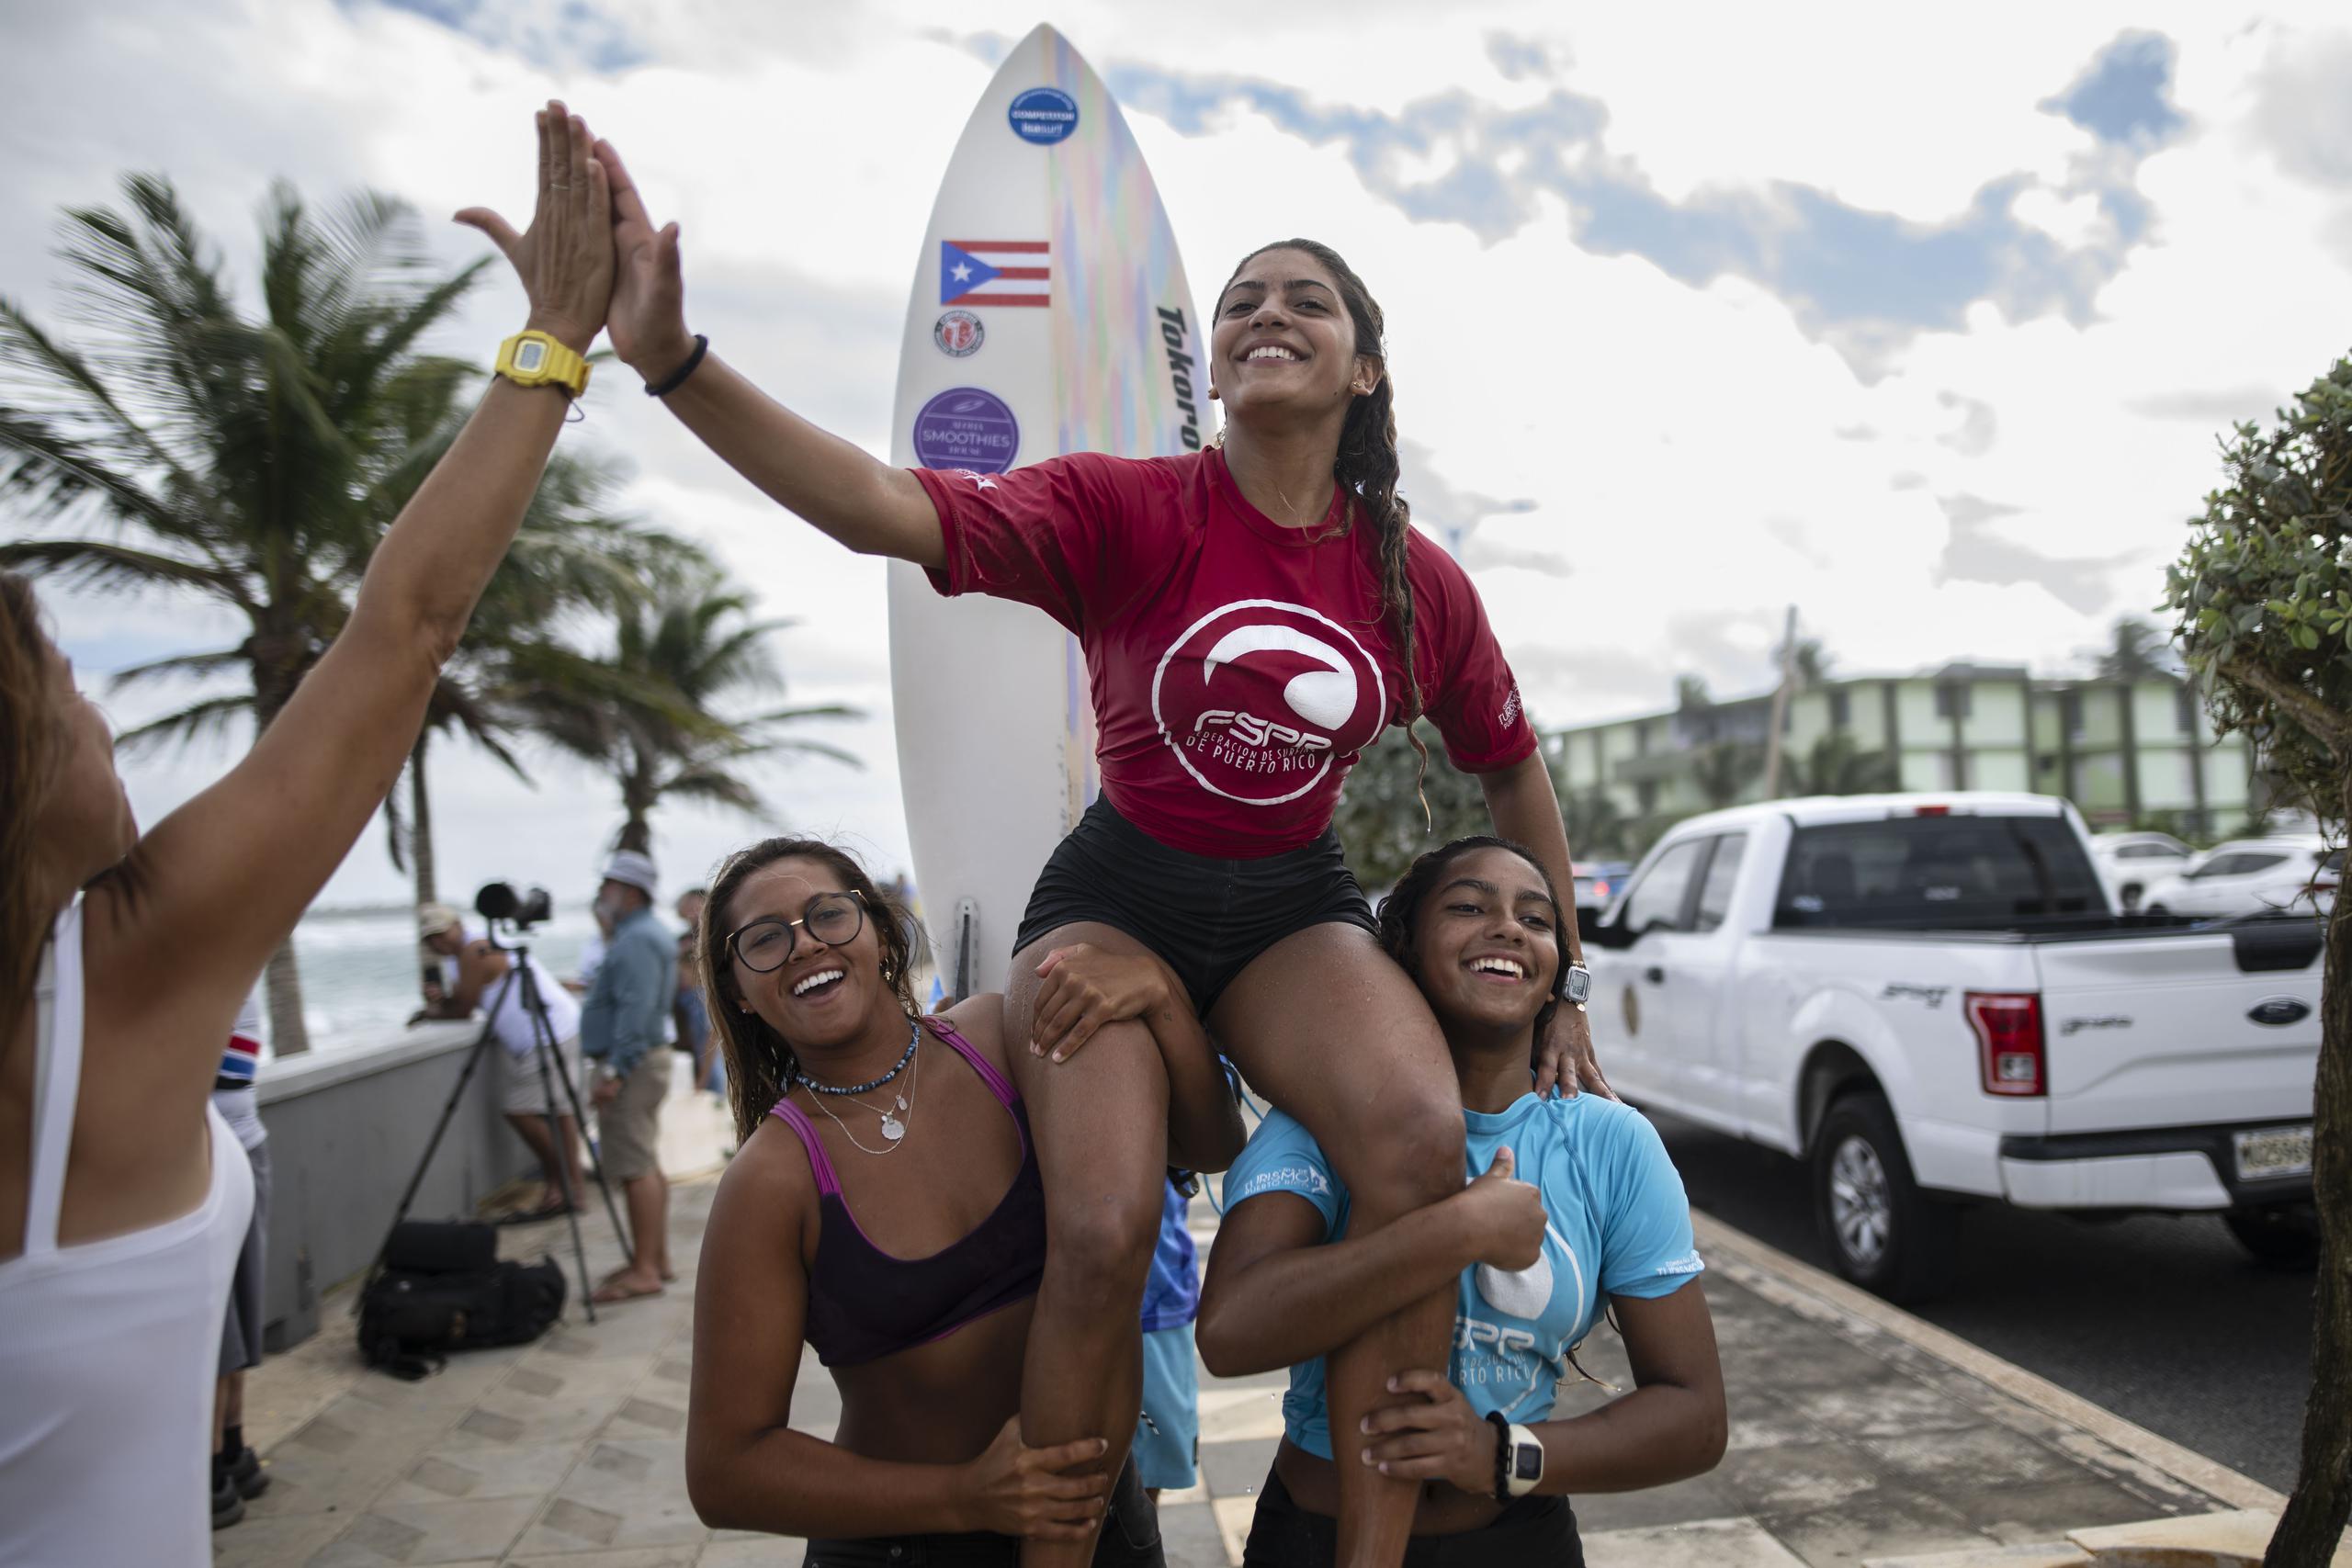 Miamar sale del agua cargada por su hermana Sinaí (a la derecha) y otra amiga luego de ganar la categoría de 18 años y menos de la cuarta parada del Circuito Nacional de Surfing.